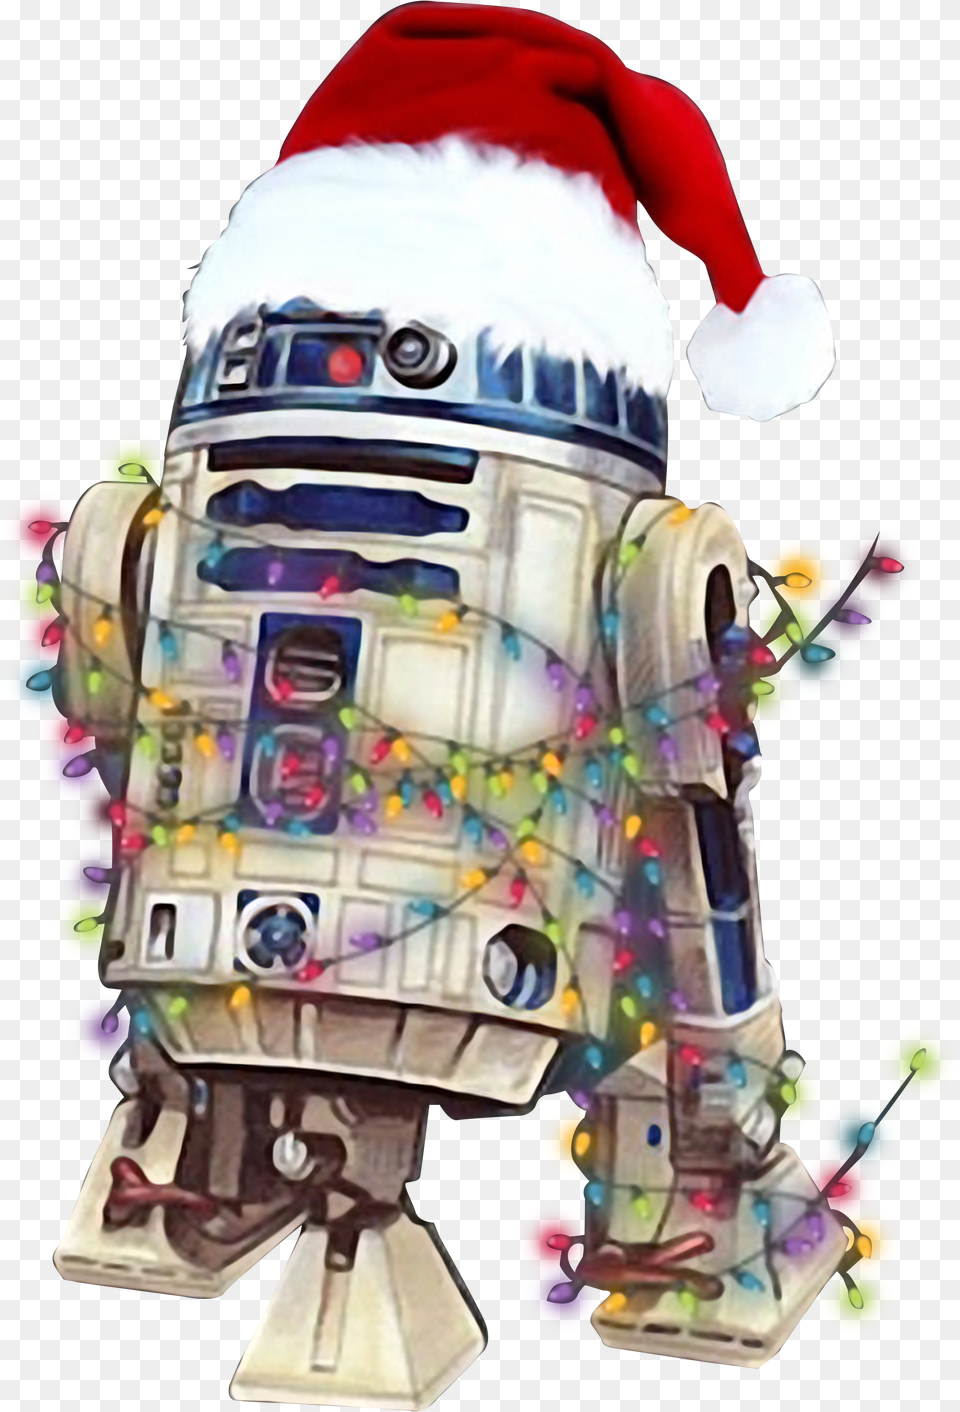 Christmas Star Wars Star Wars Christmas Png